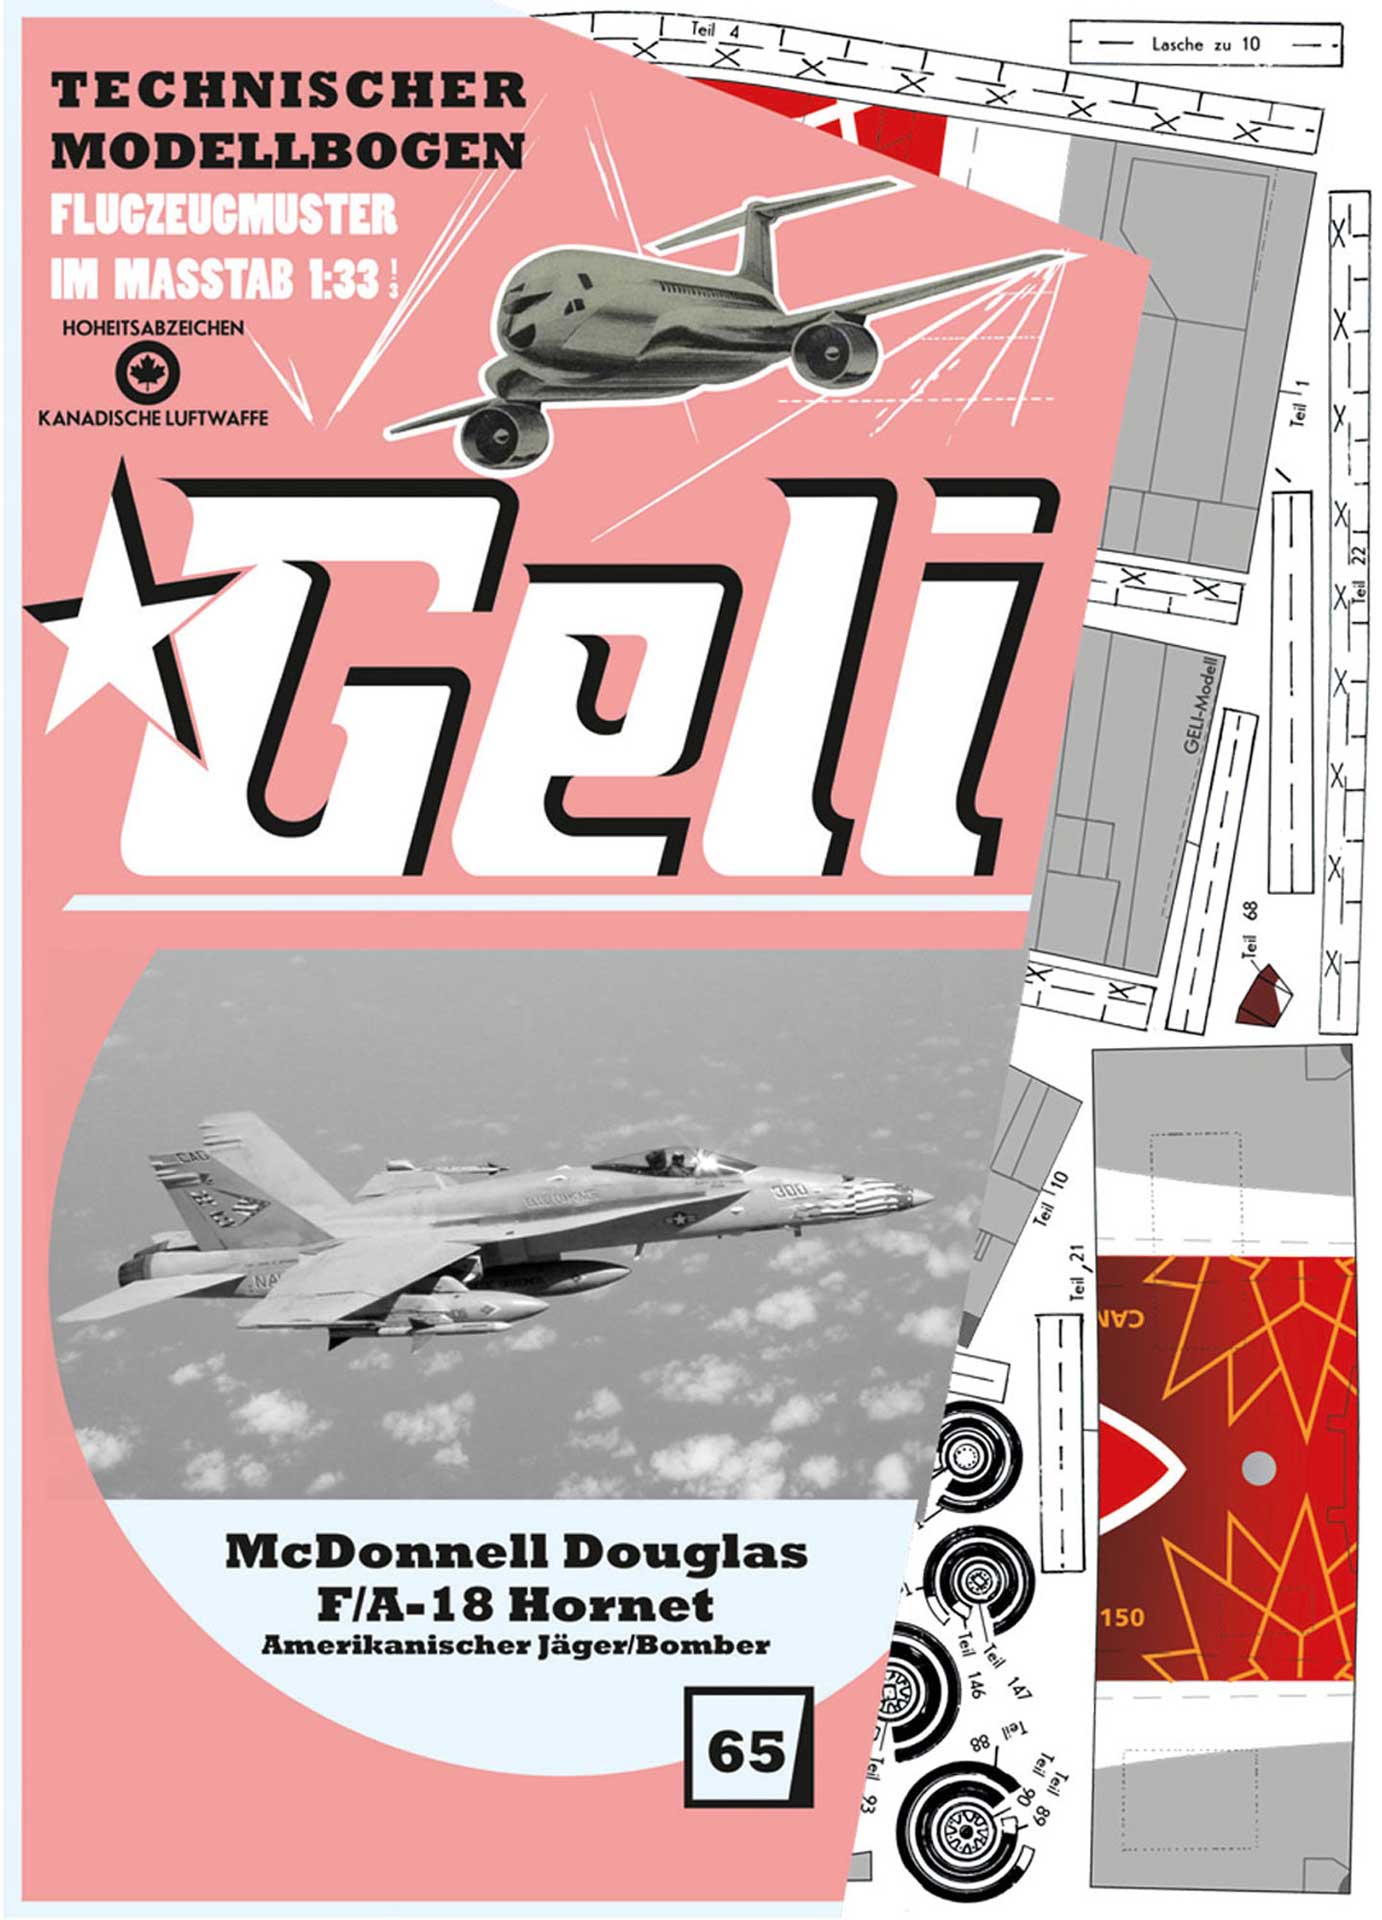 GELI MC DONELL DOUGLAS F-18 # 65 KARTONMODELL